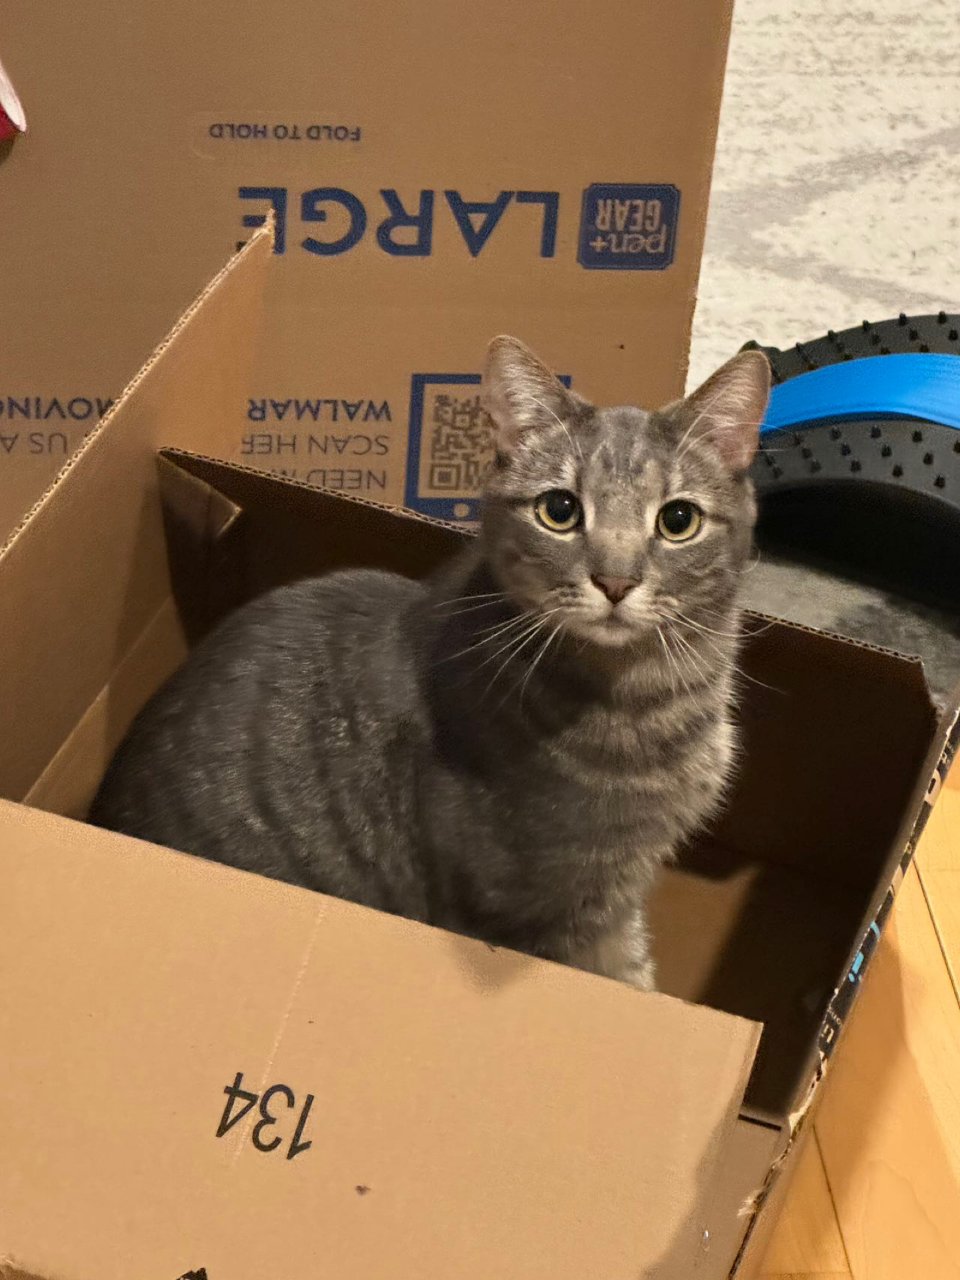 让我看看是哪家的小猫咪喜欢大箱子...